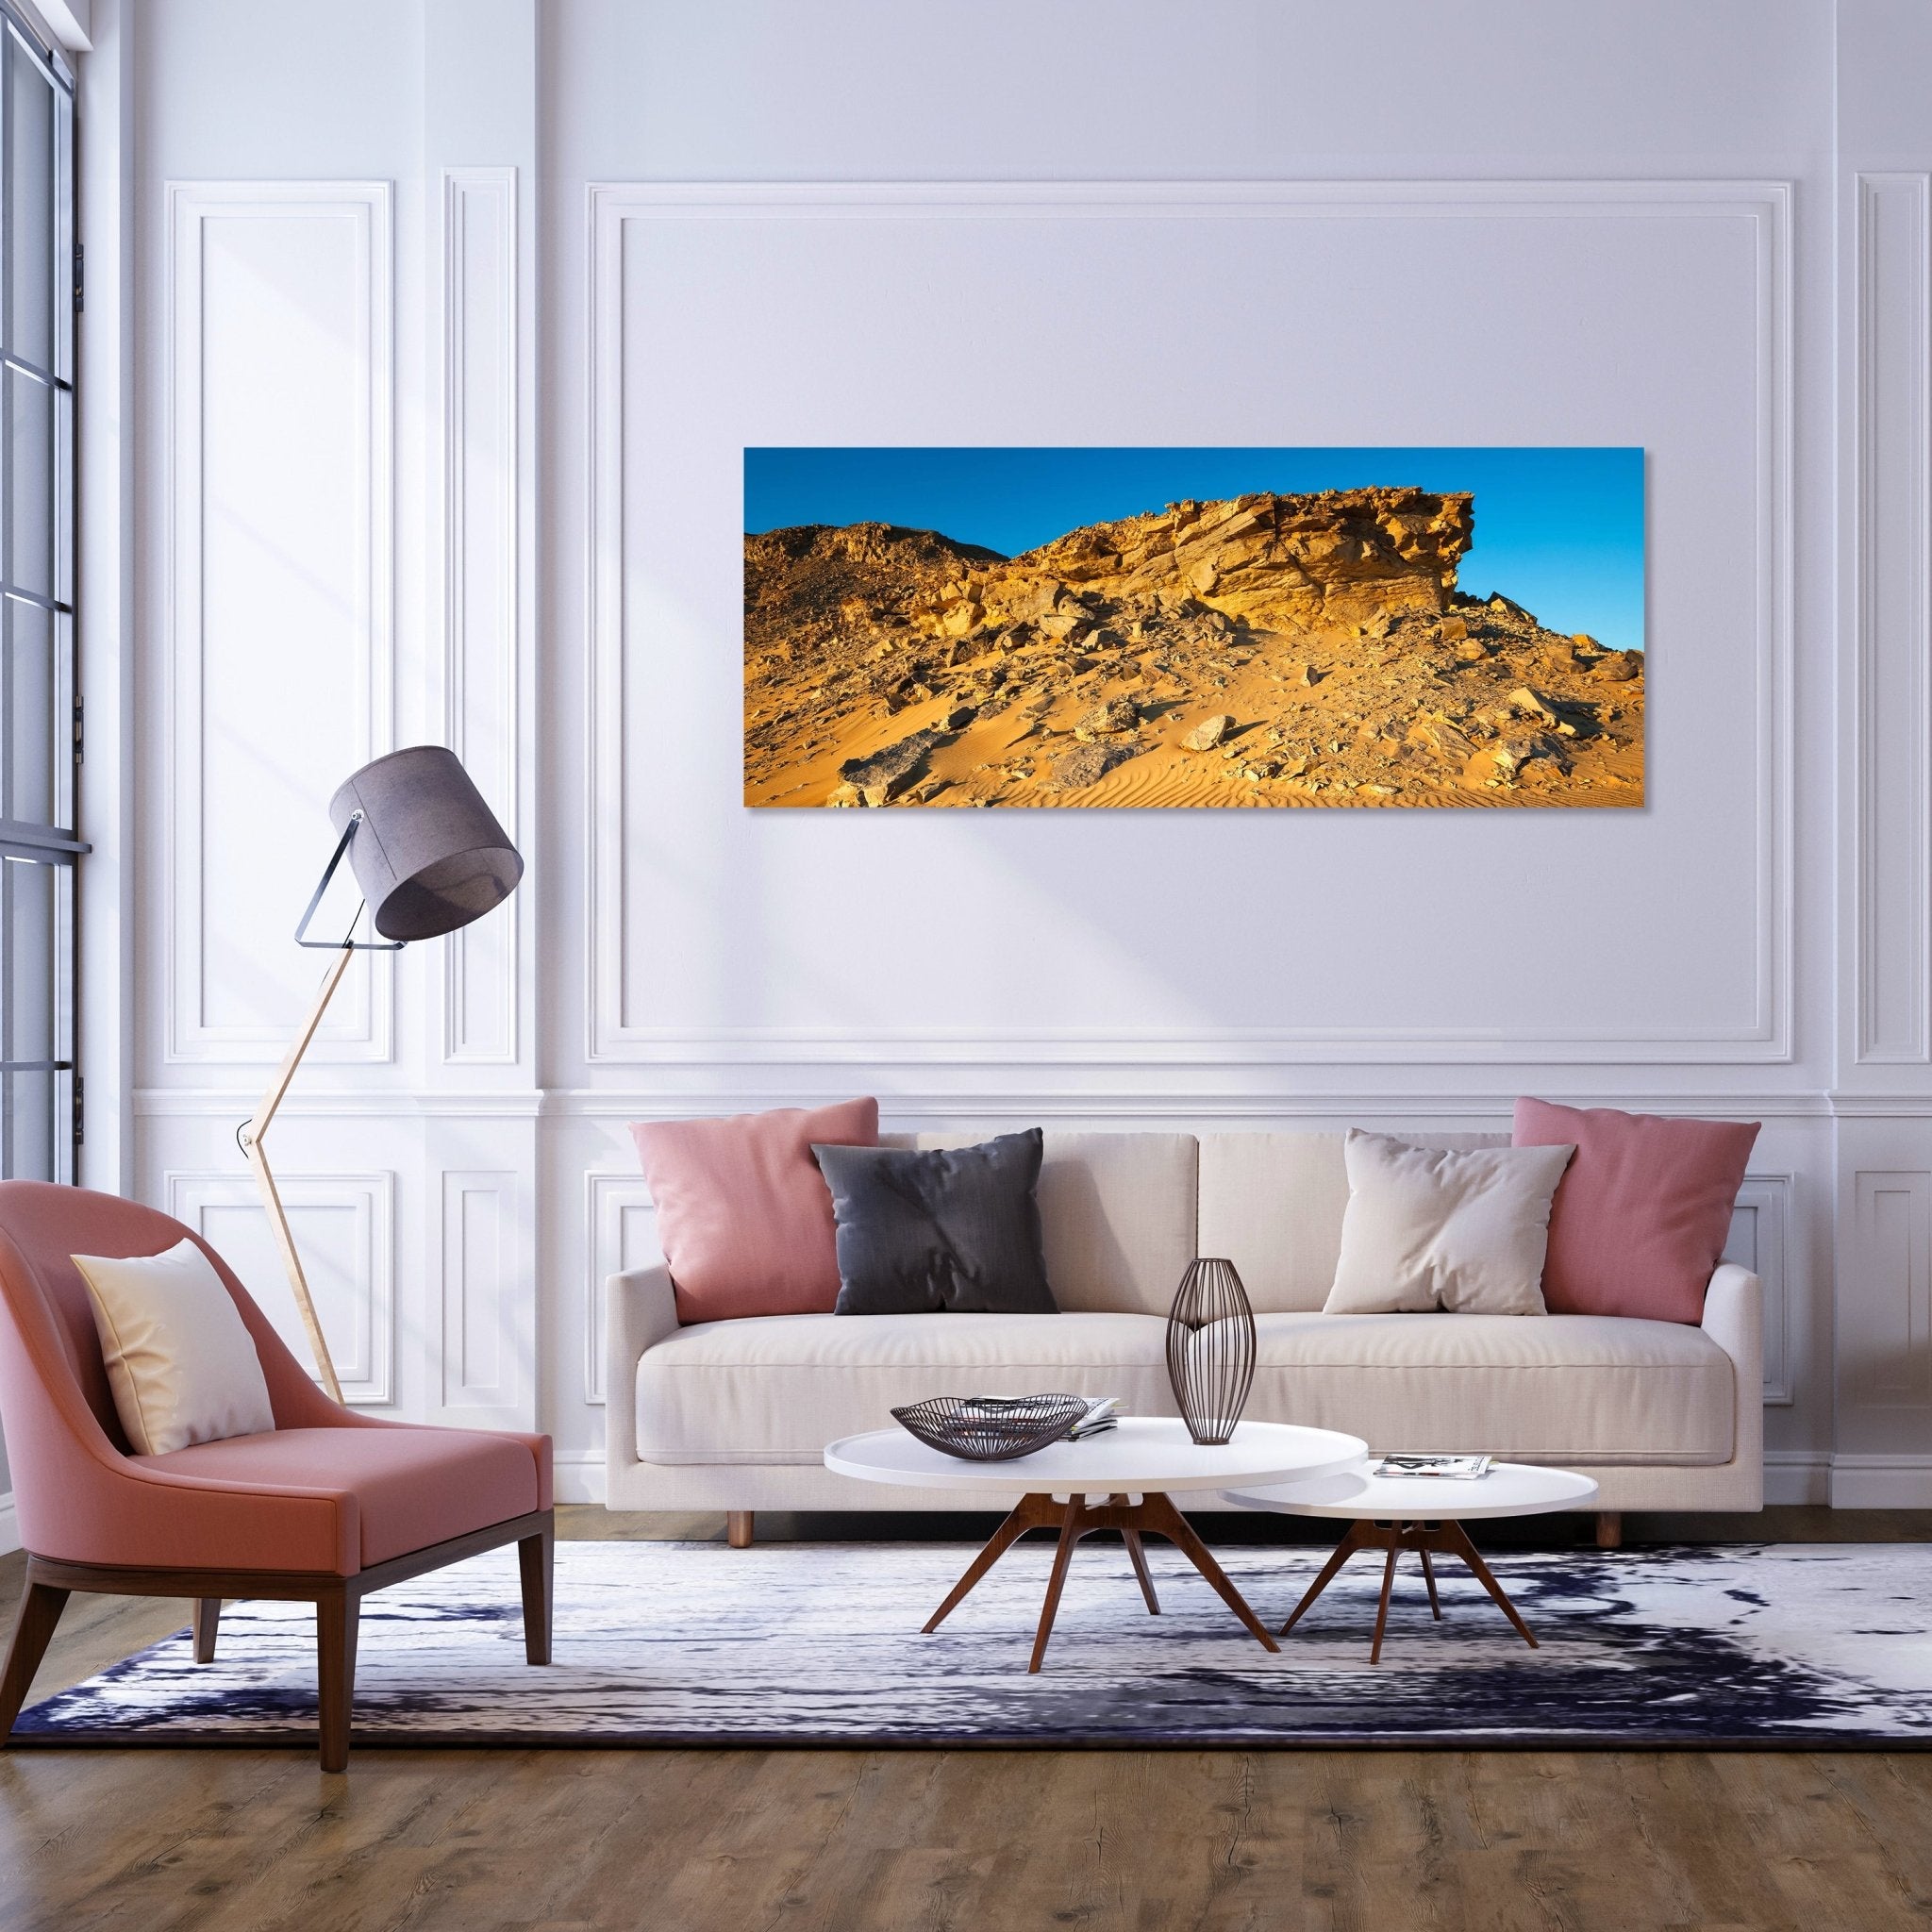 Leinwandbild Goldene Wüste M0350 kaufen - Bild 2